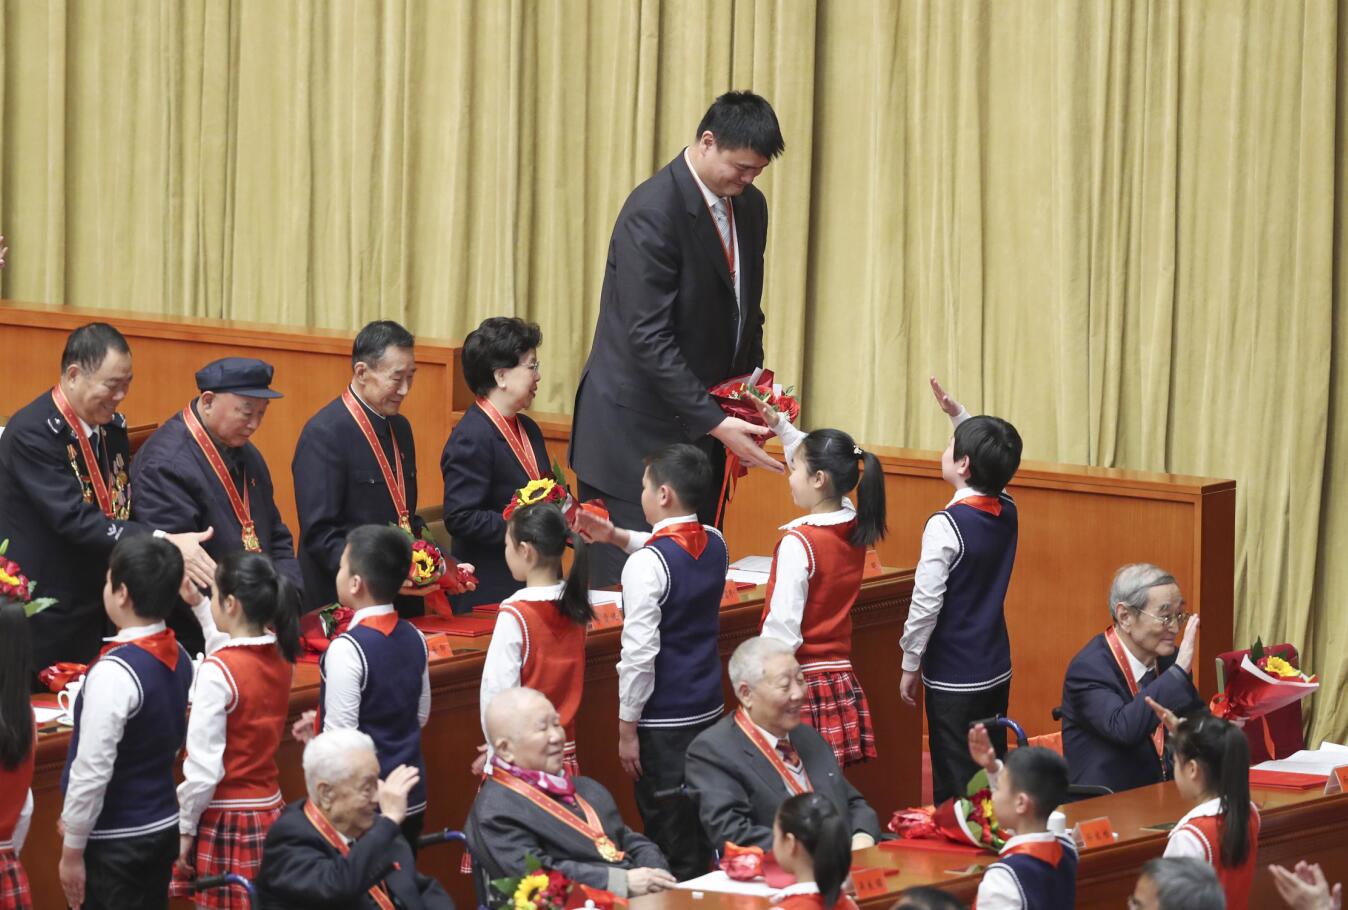 2018年12月18日A在北京舉行的慶祝改革開放40周年大會上A獲得改革先鋒稱號的姚明等接受少先隊員獻花C新華社記者 殷剛 攝